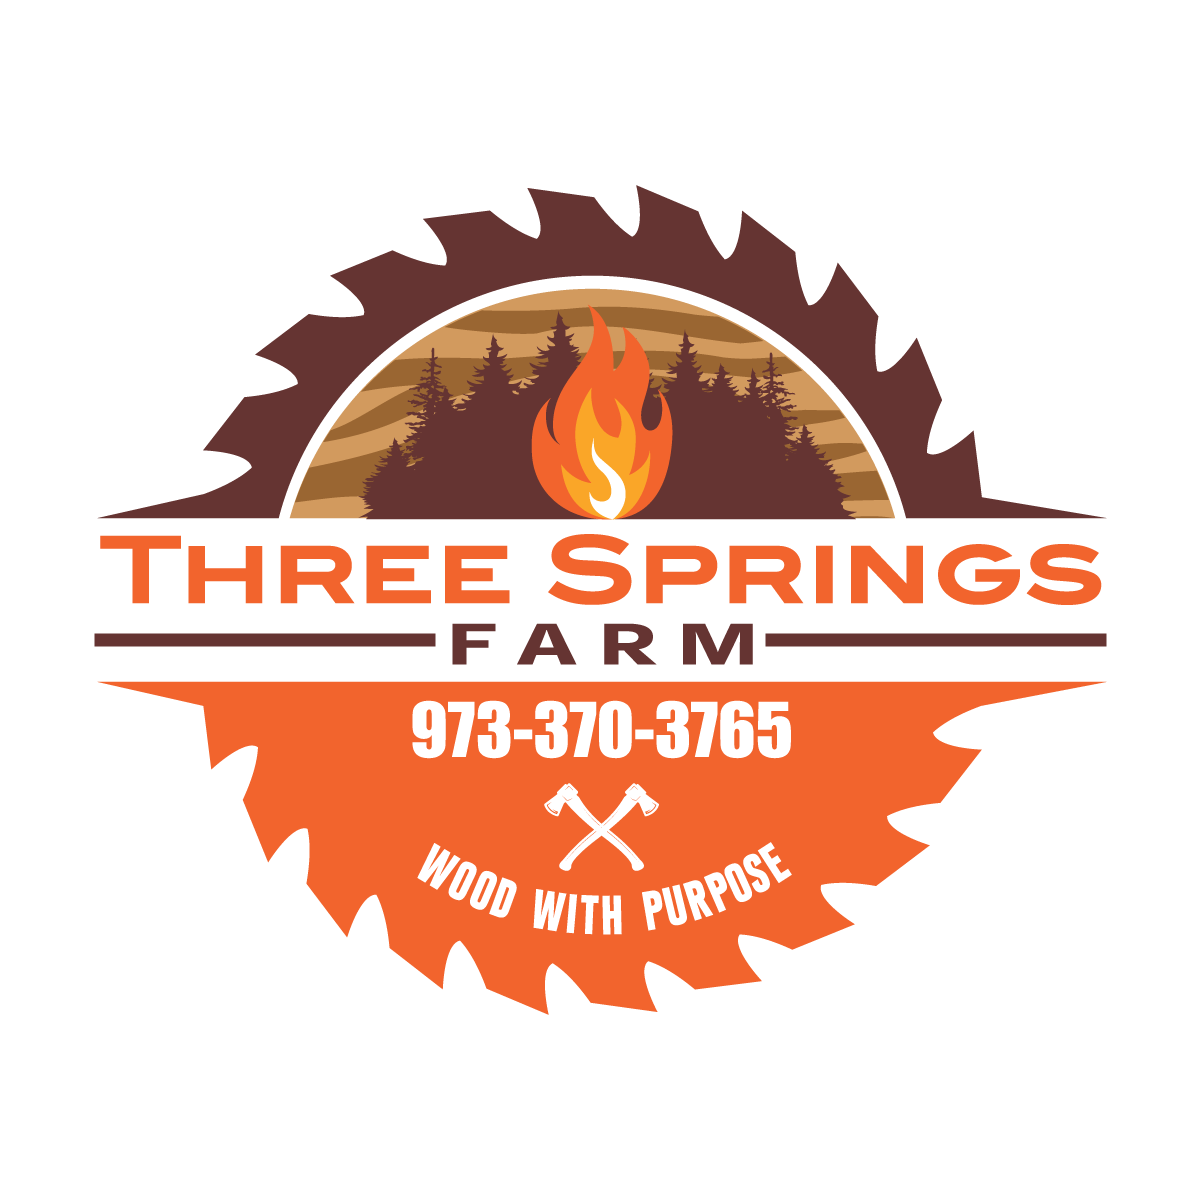 Three Springs Farm, LLC